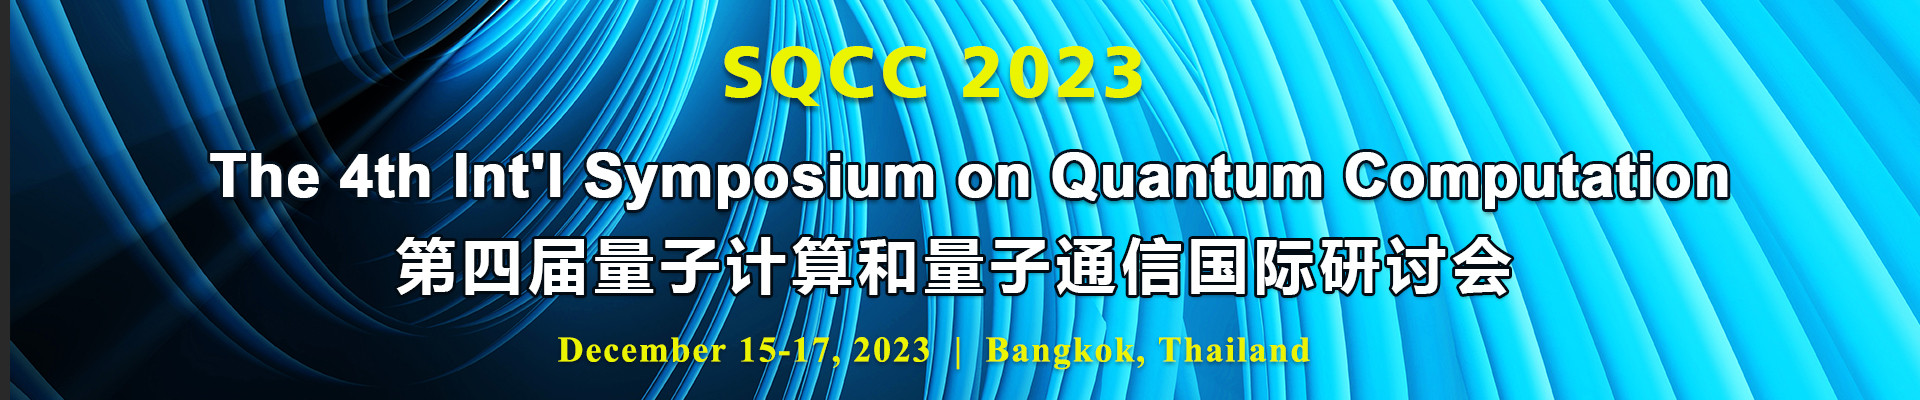 第四屆量子計算和量子通信國際研討會(SQCC 2023)